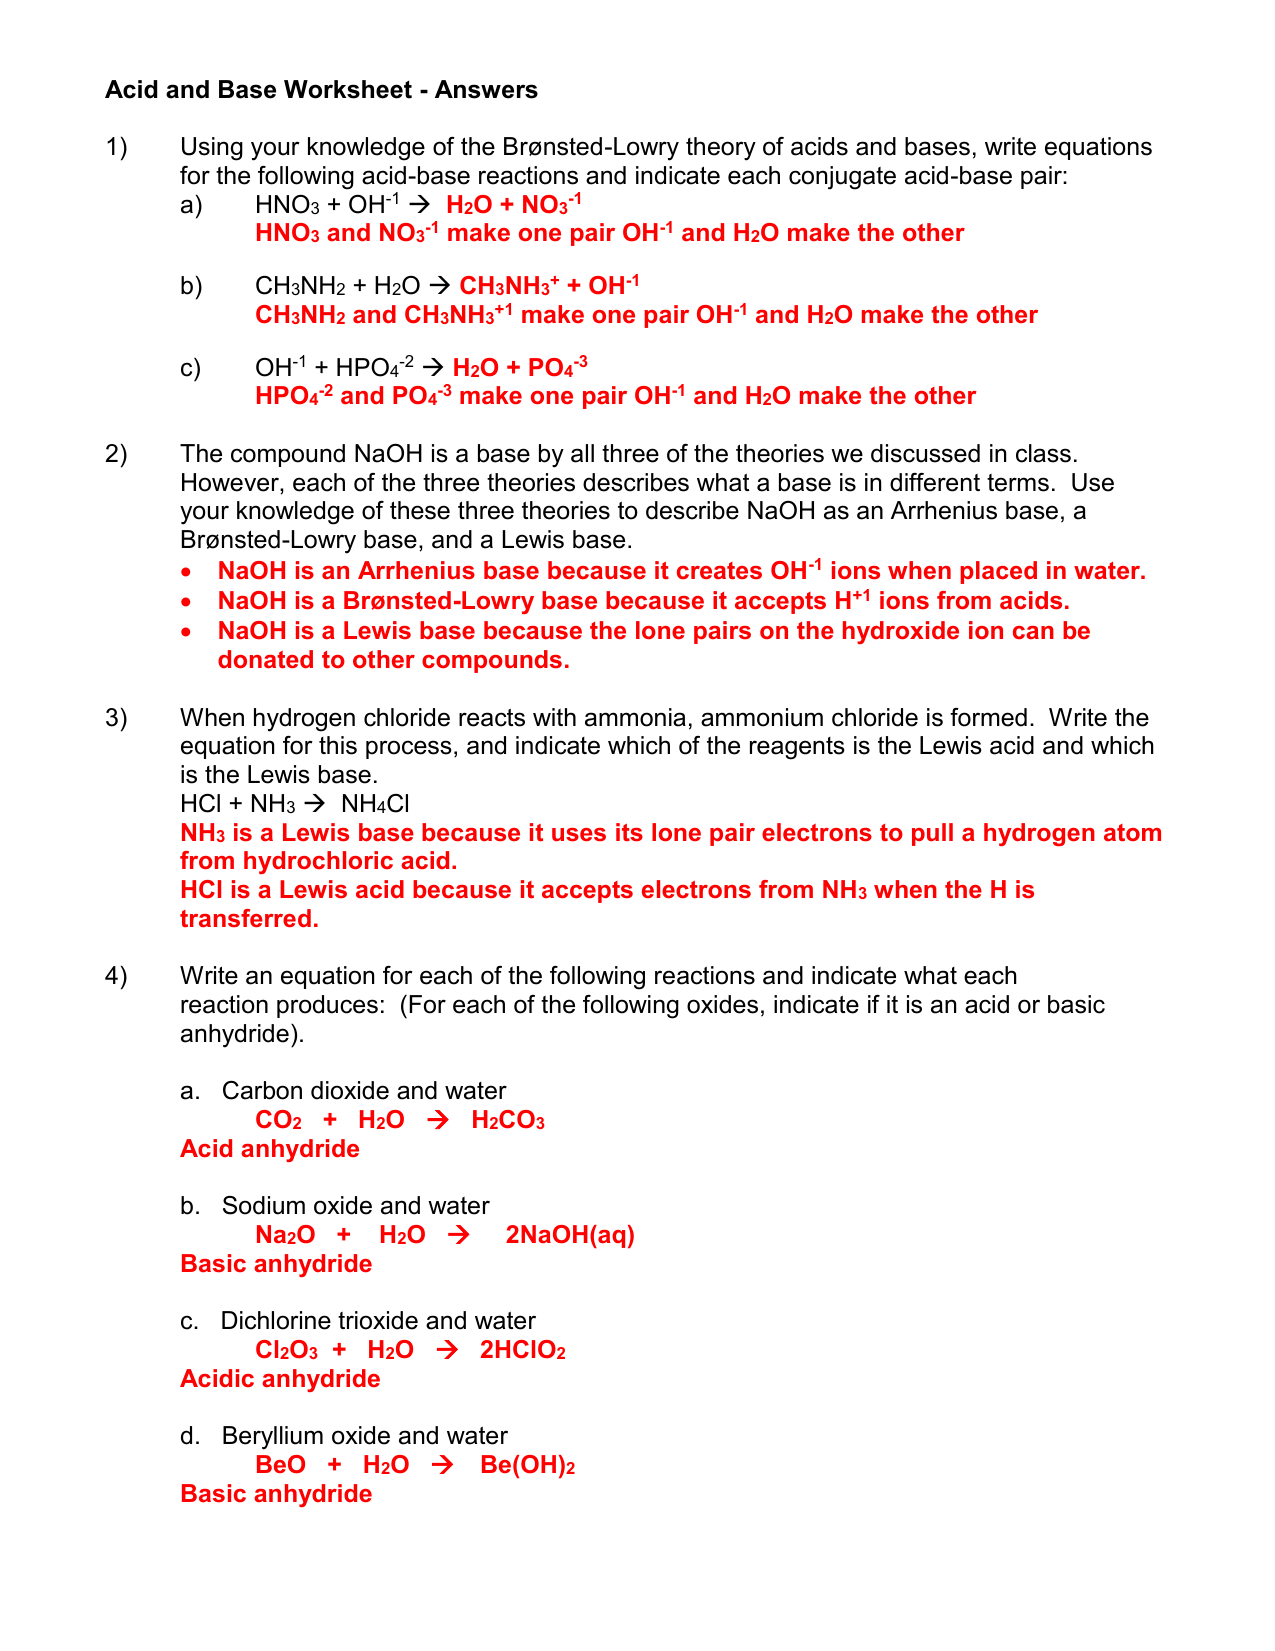 Acid and Base Worksheet 20 20-20 ans key Regarding Acids And Bases Worksheet